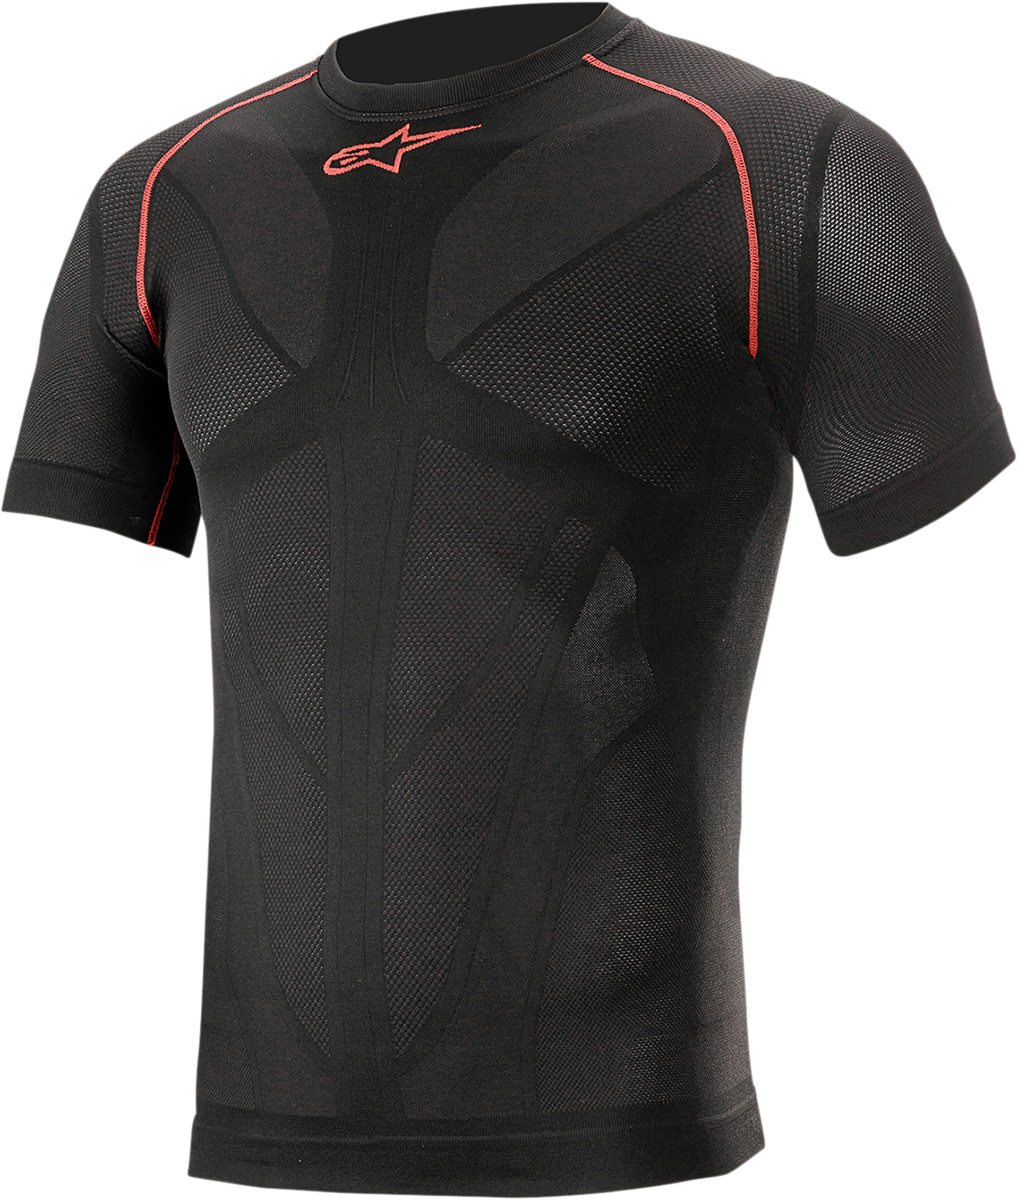 ALPINESTARS Ride Tech v2 Summer Short Sleeve Underwear Top - Black - XL/2XL 4752721-13-XL/2